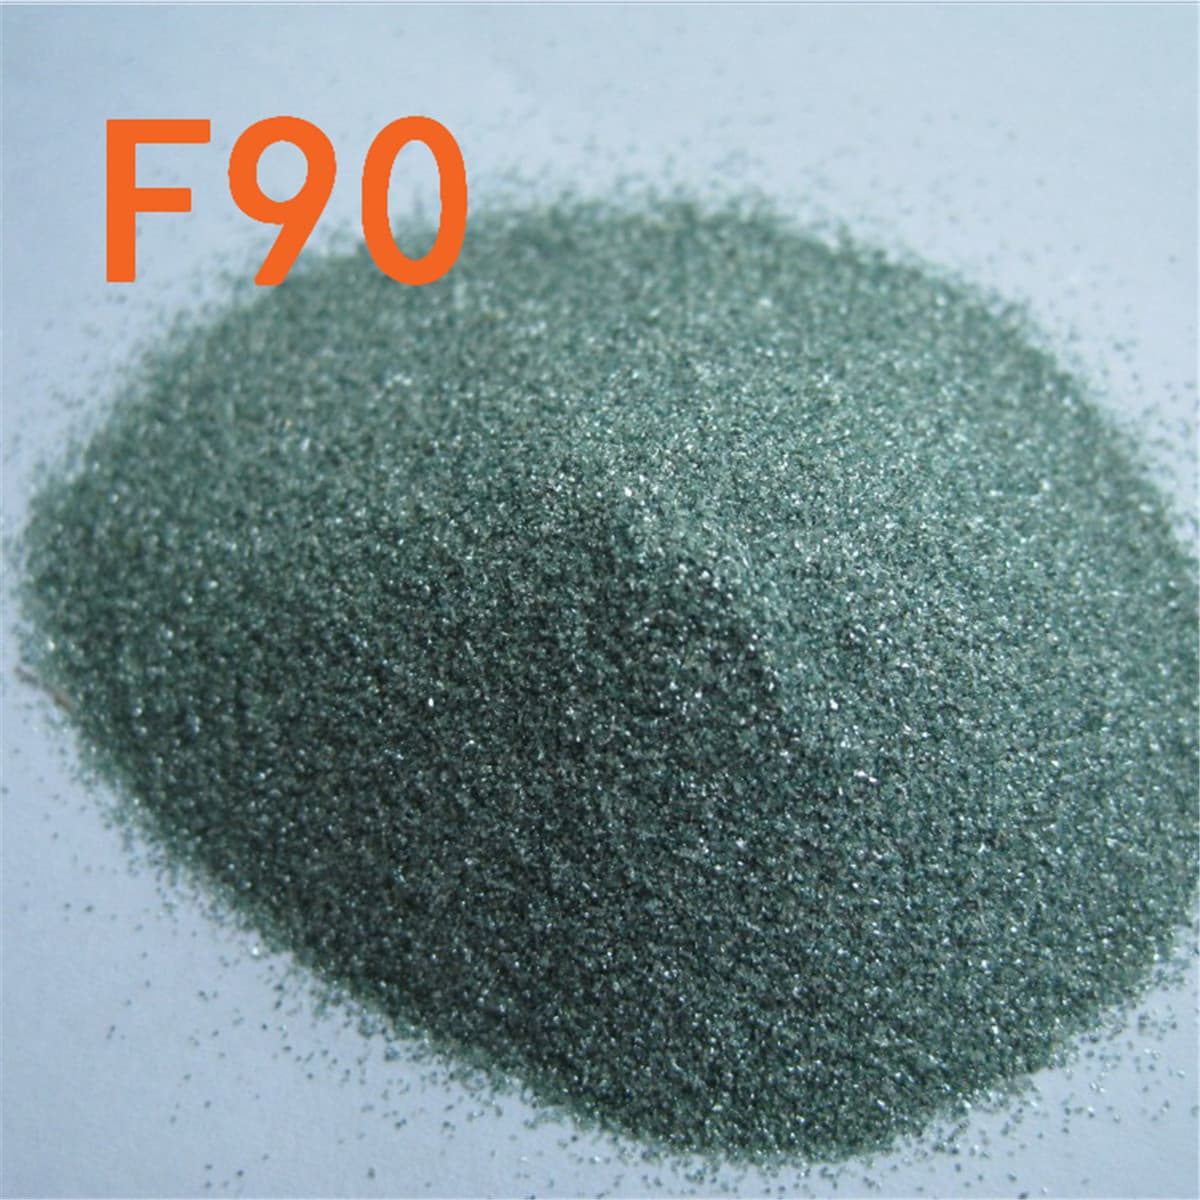 green silicon carbide for polishingJIS GC powder SIC powder